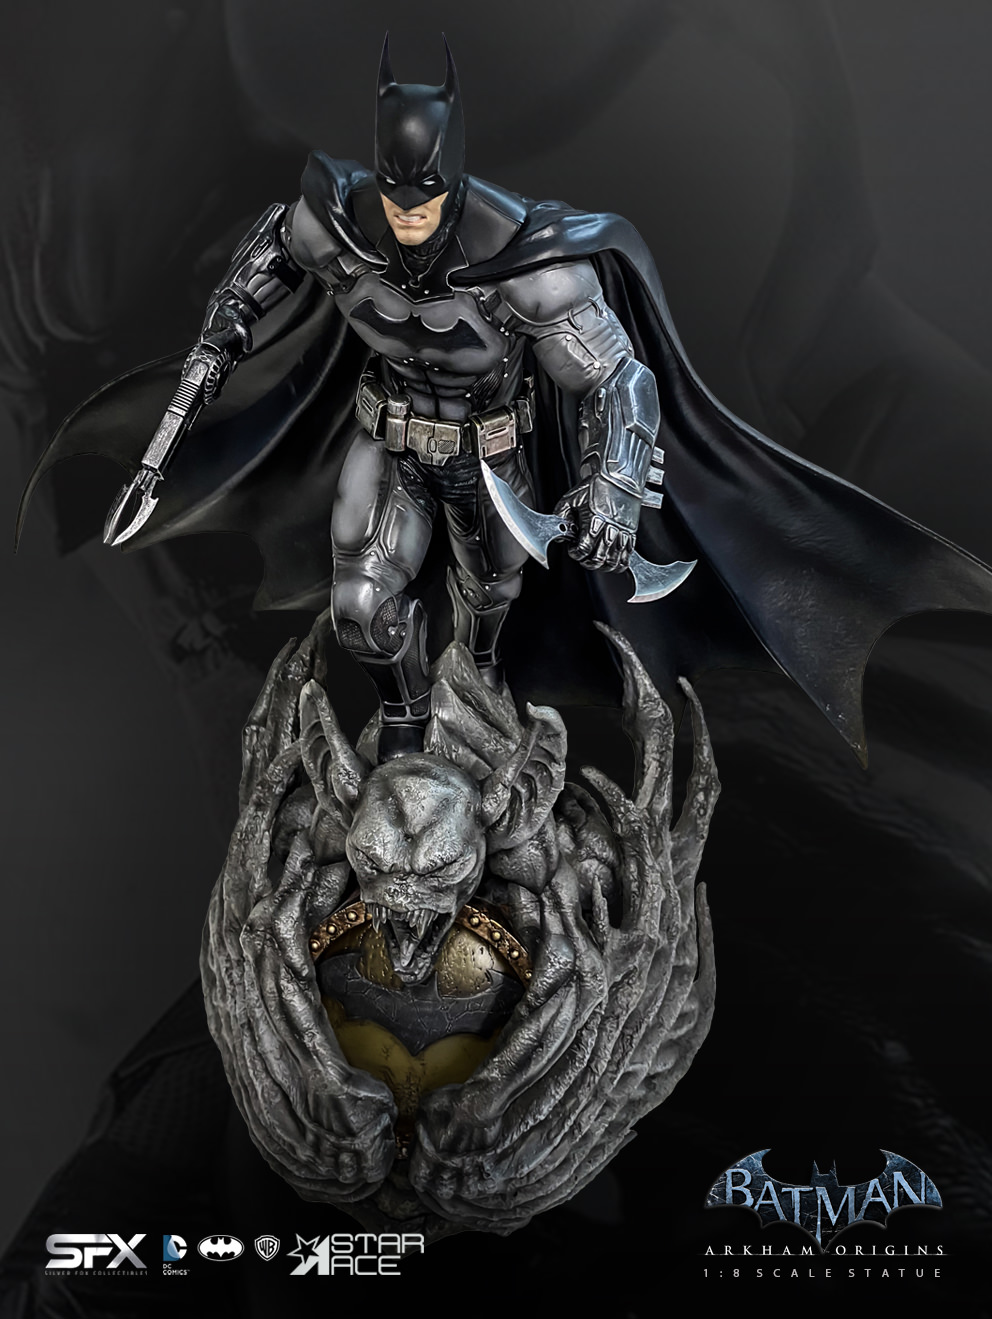 Batman Arkham Origins Exclusive Edition (Prototype Shown) View 27